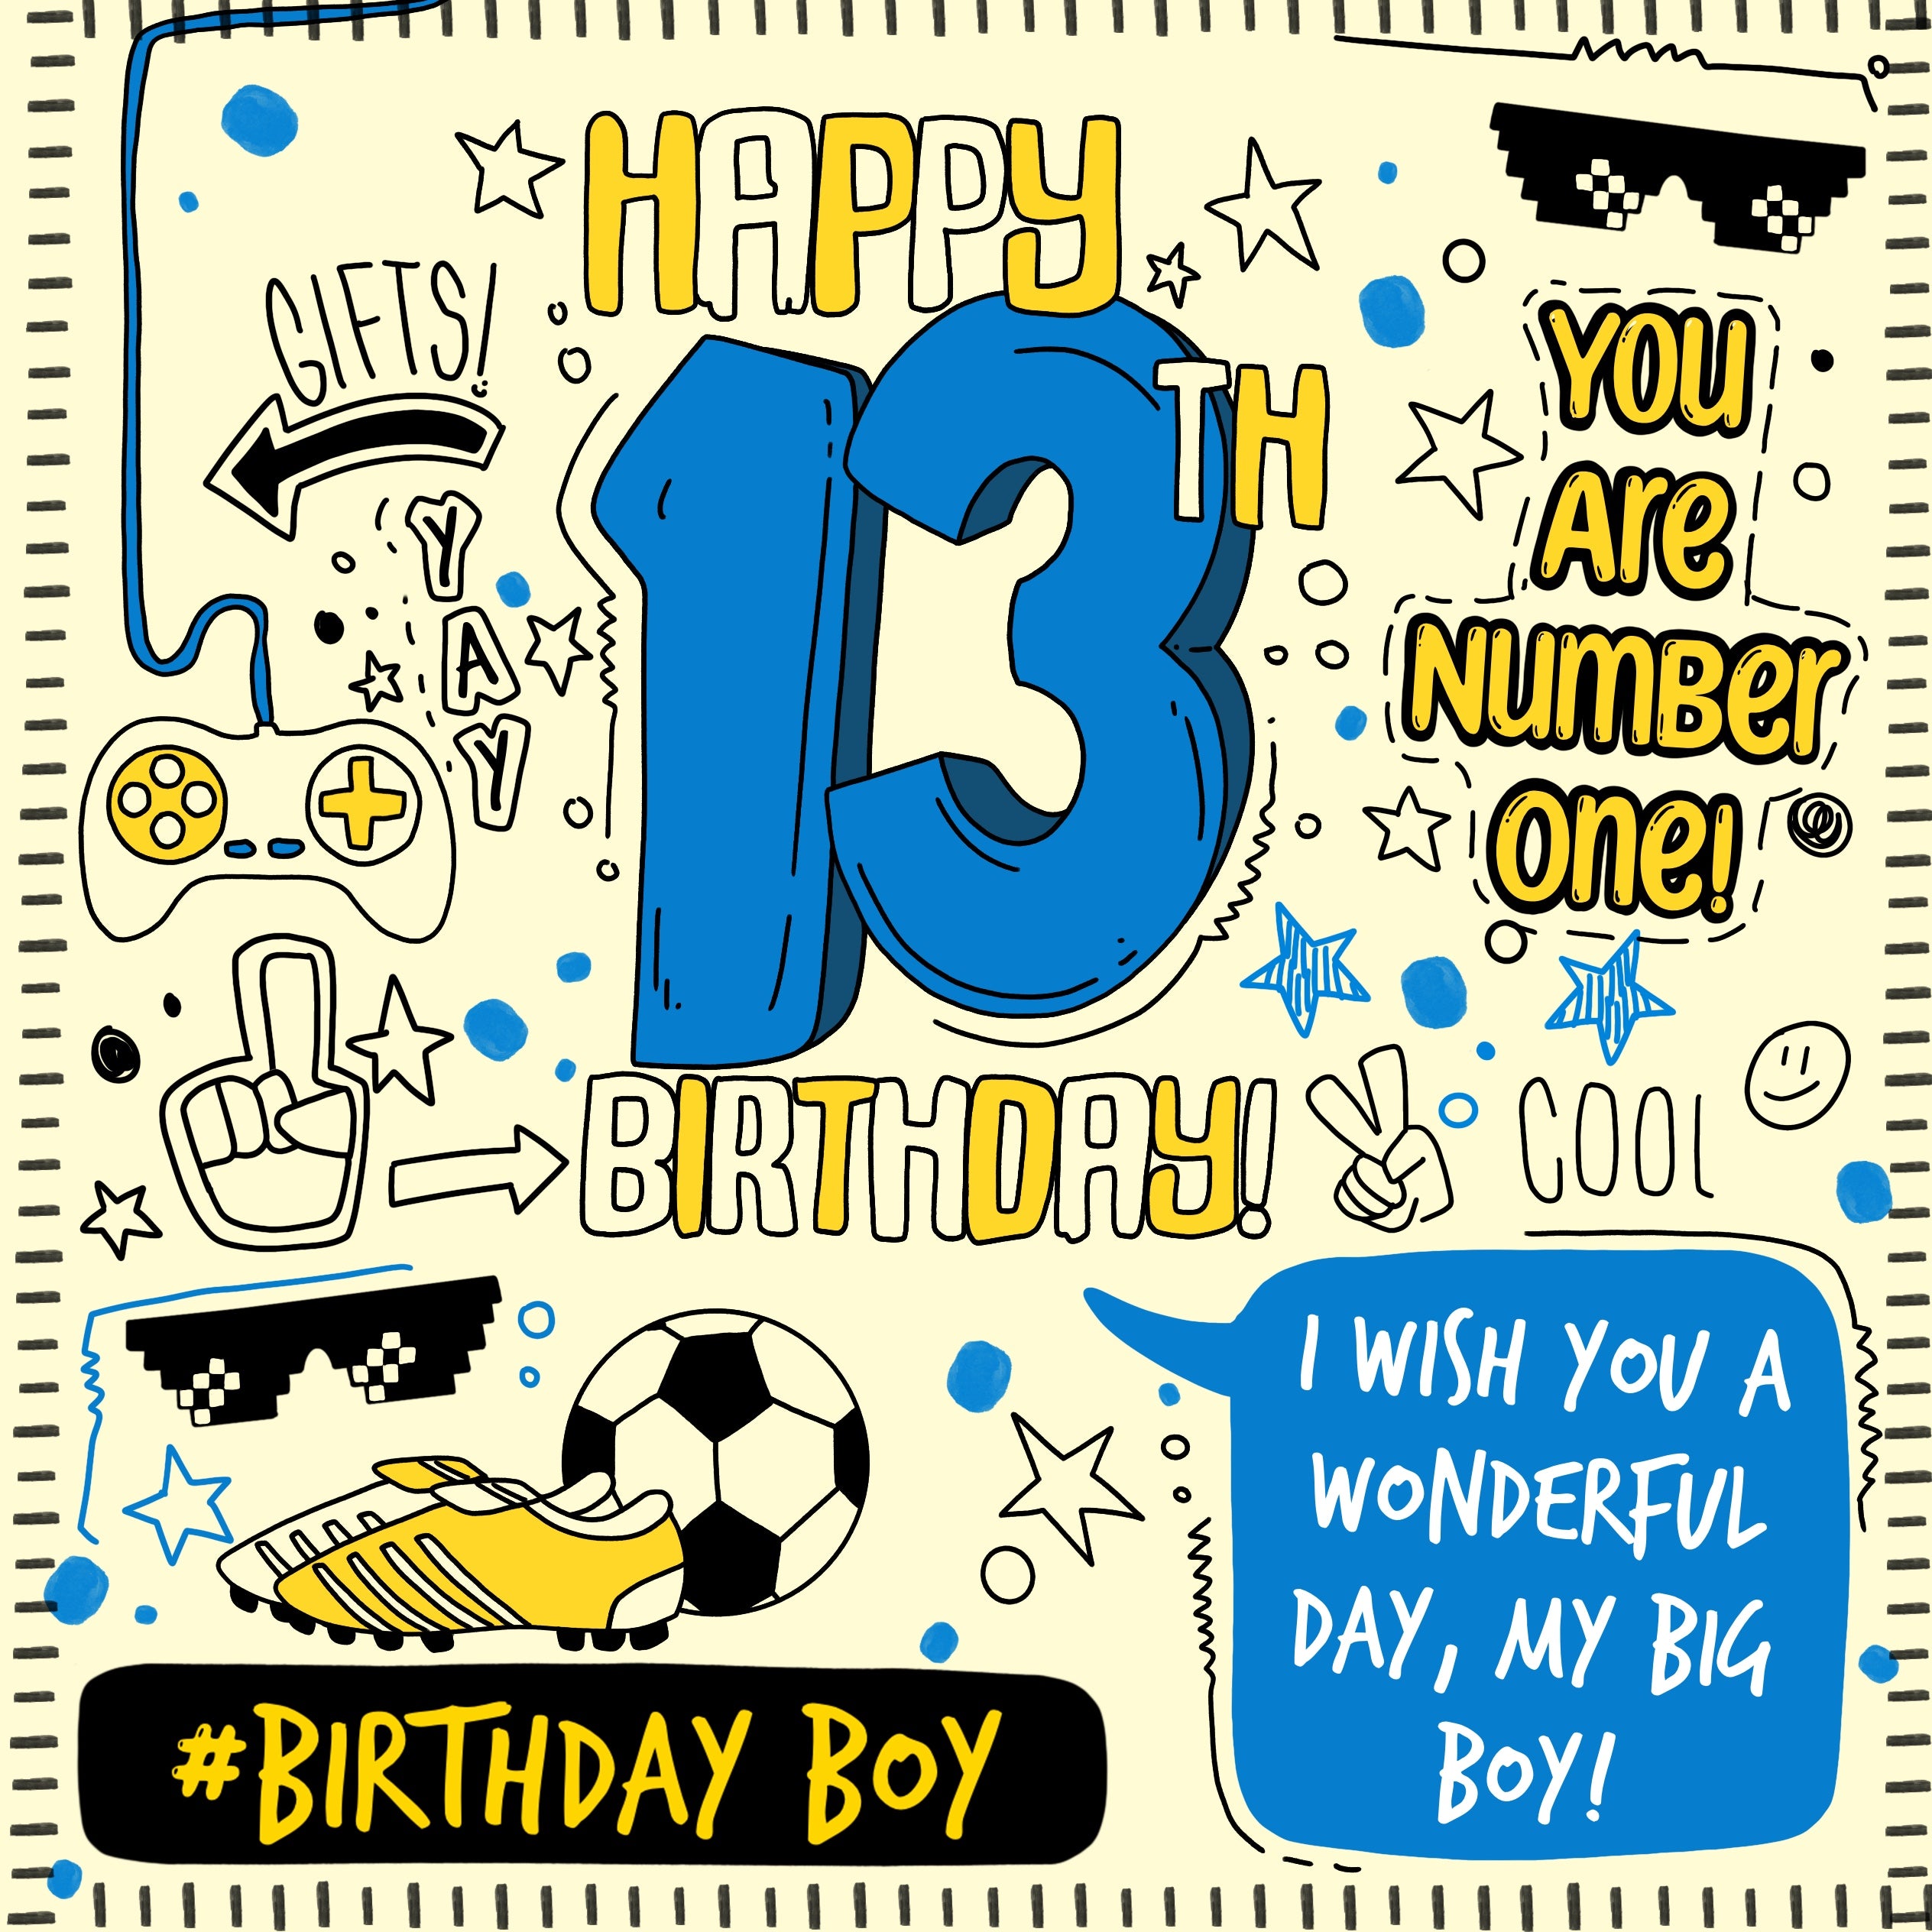 Happy 13th Birthday Wish You A Wonderful Day Card Occasion_Birthday Milestone Age_13th Birthday